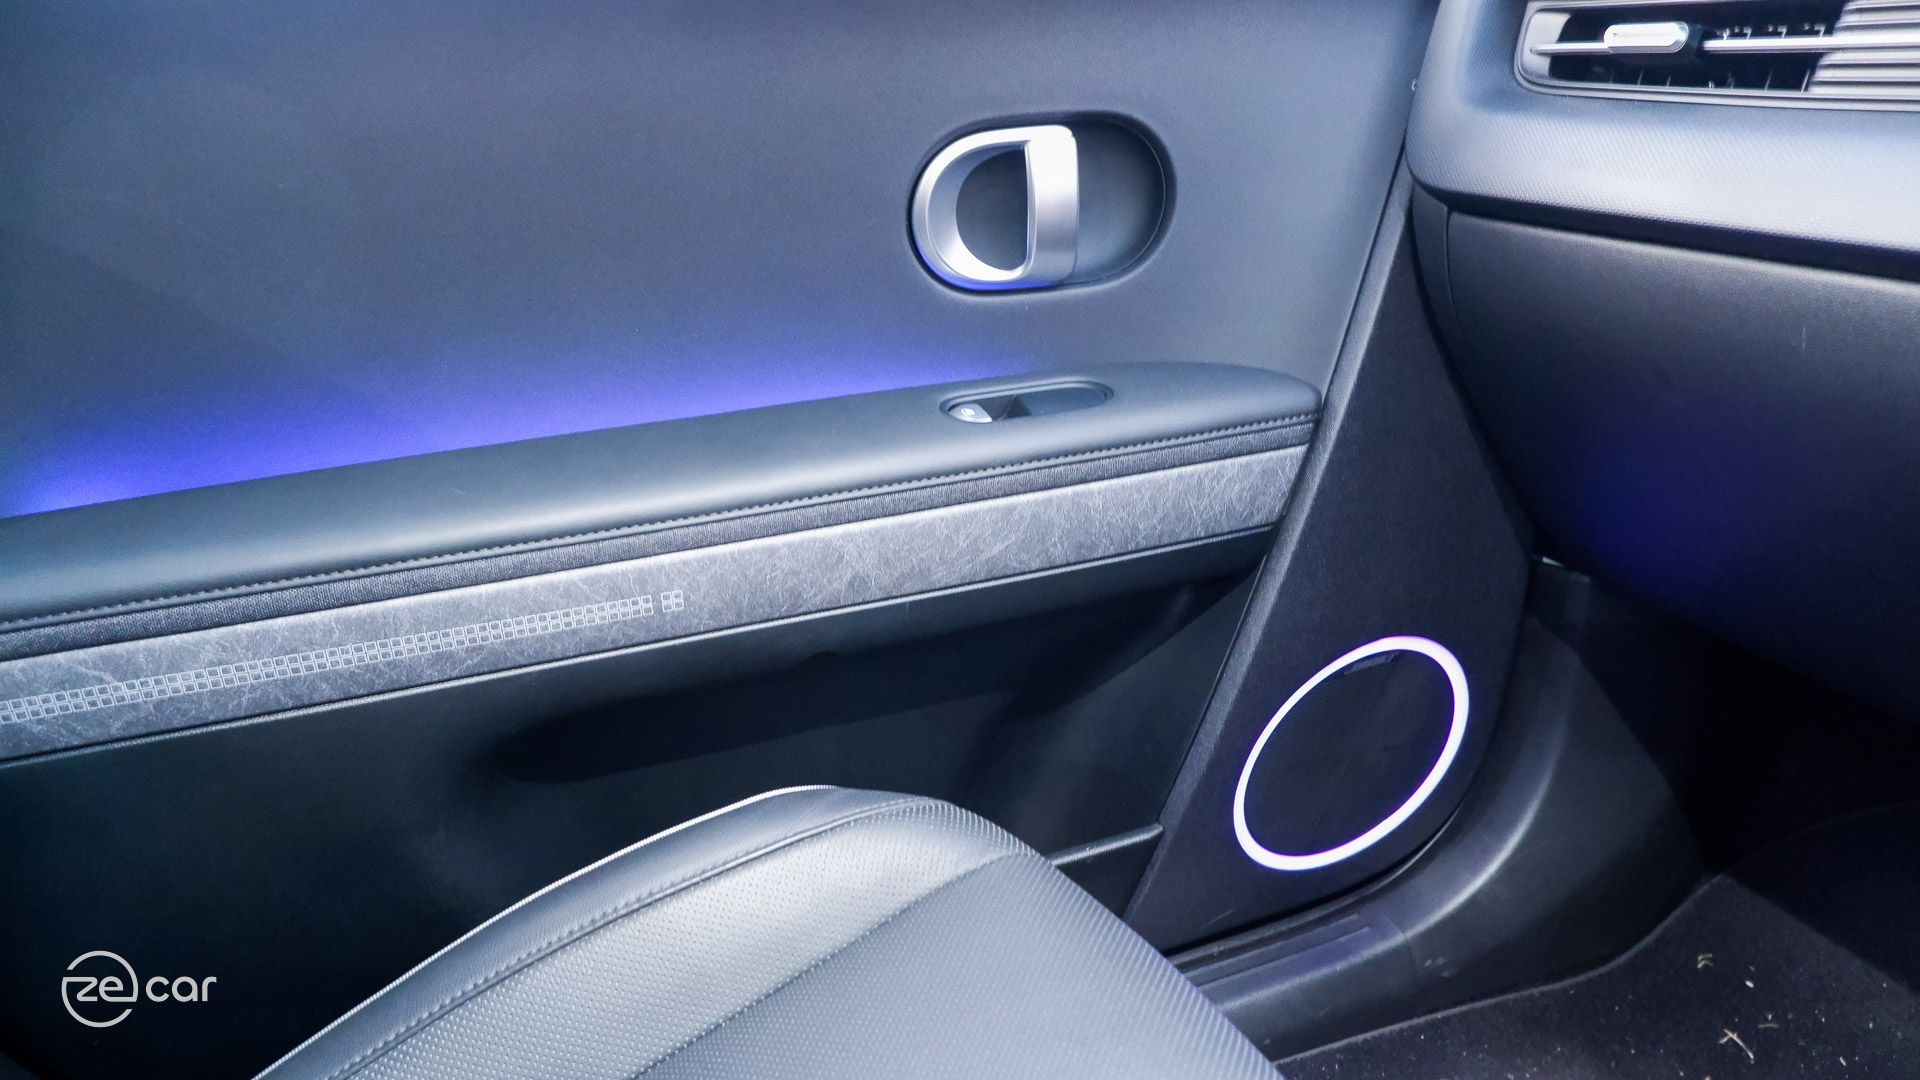 Hyundai Ioniq 5 interior ambient lighting and sunshade